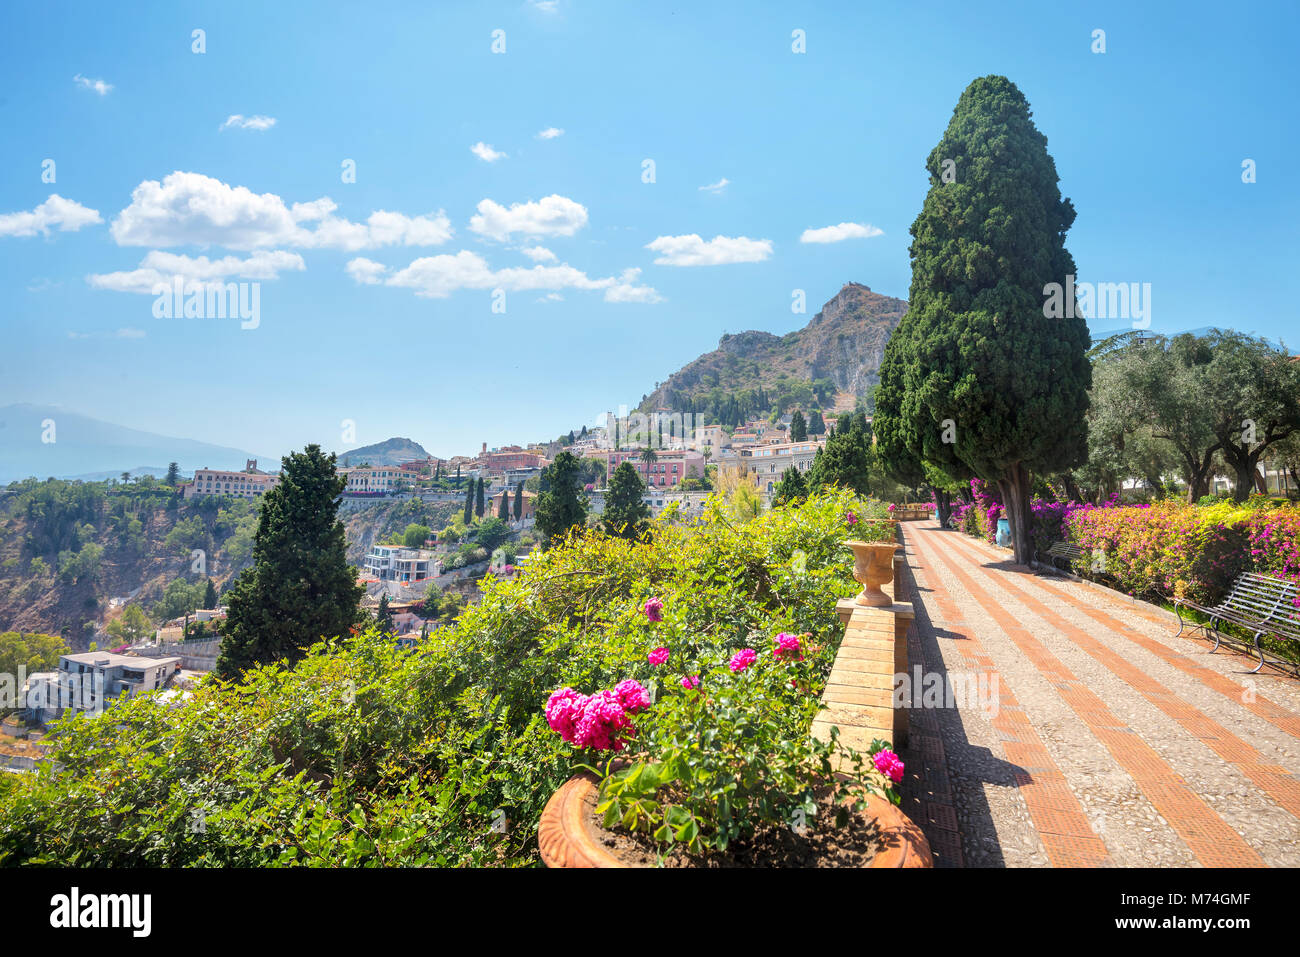 Paesaggio con giardino percorso in città parco pubblico a Taormina. Sicilia, Italia Foto Stock